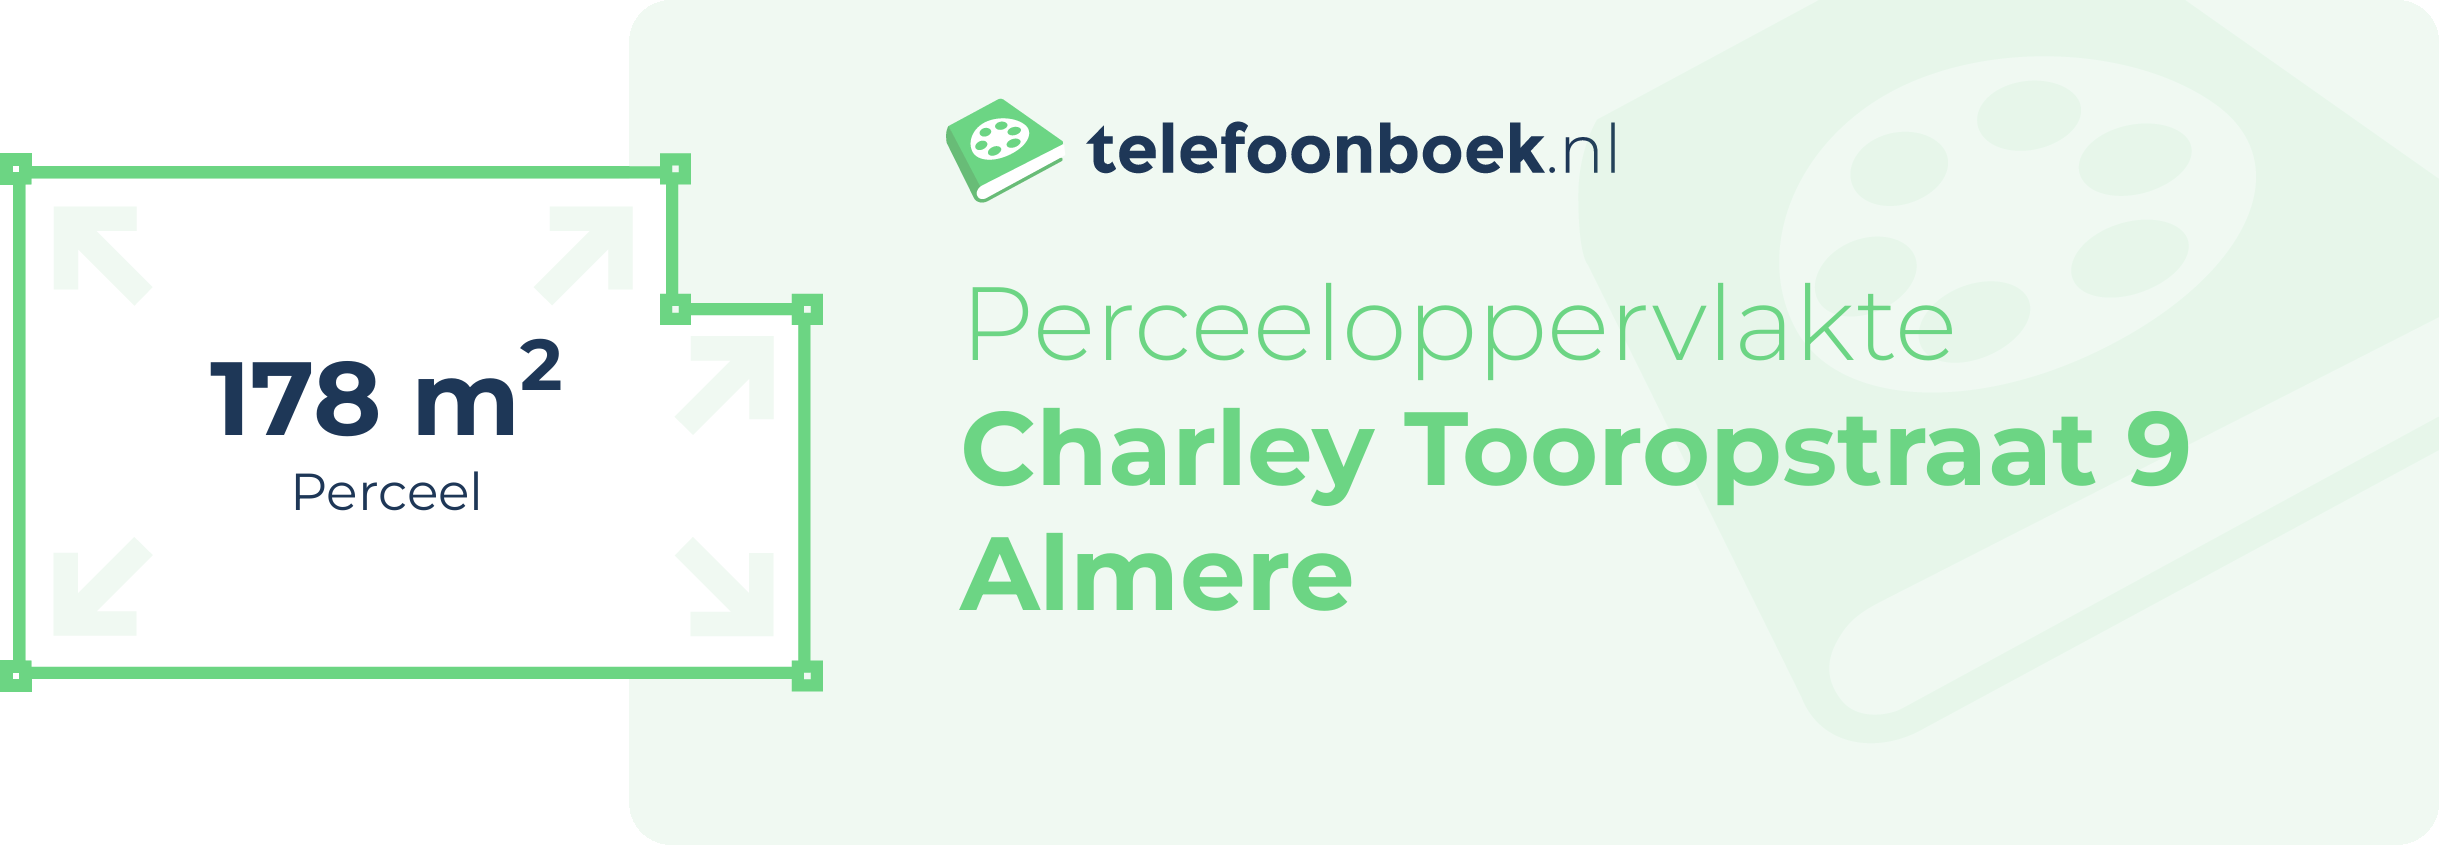 Perceeloppervlakte Charley Tooropstraat 9 Almere